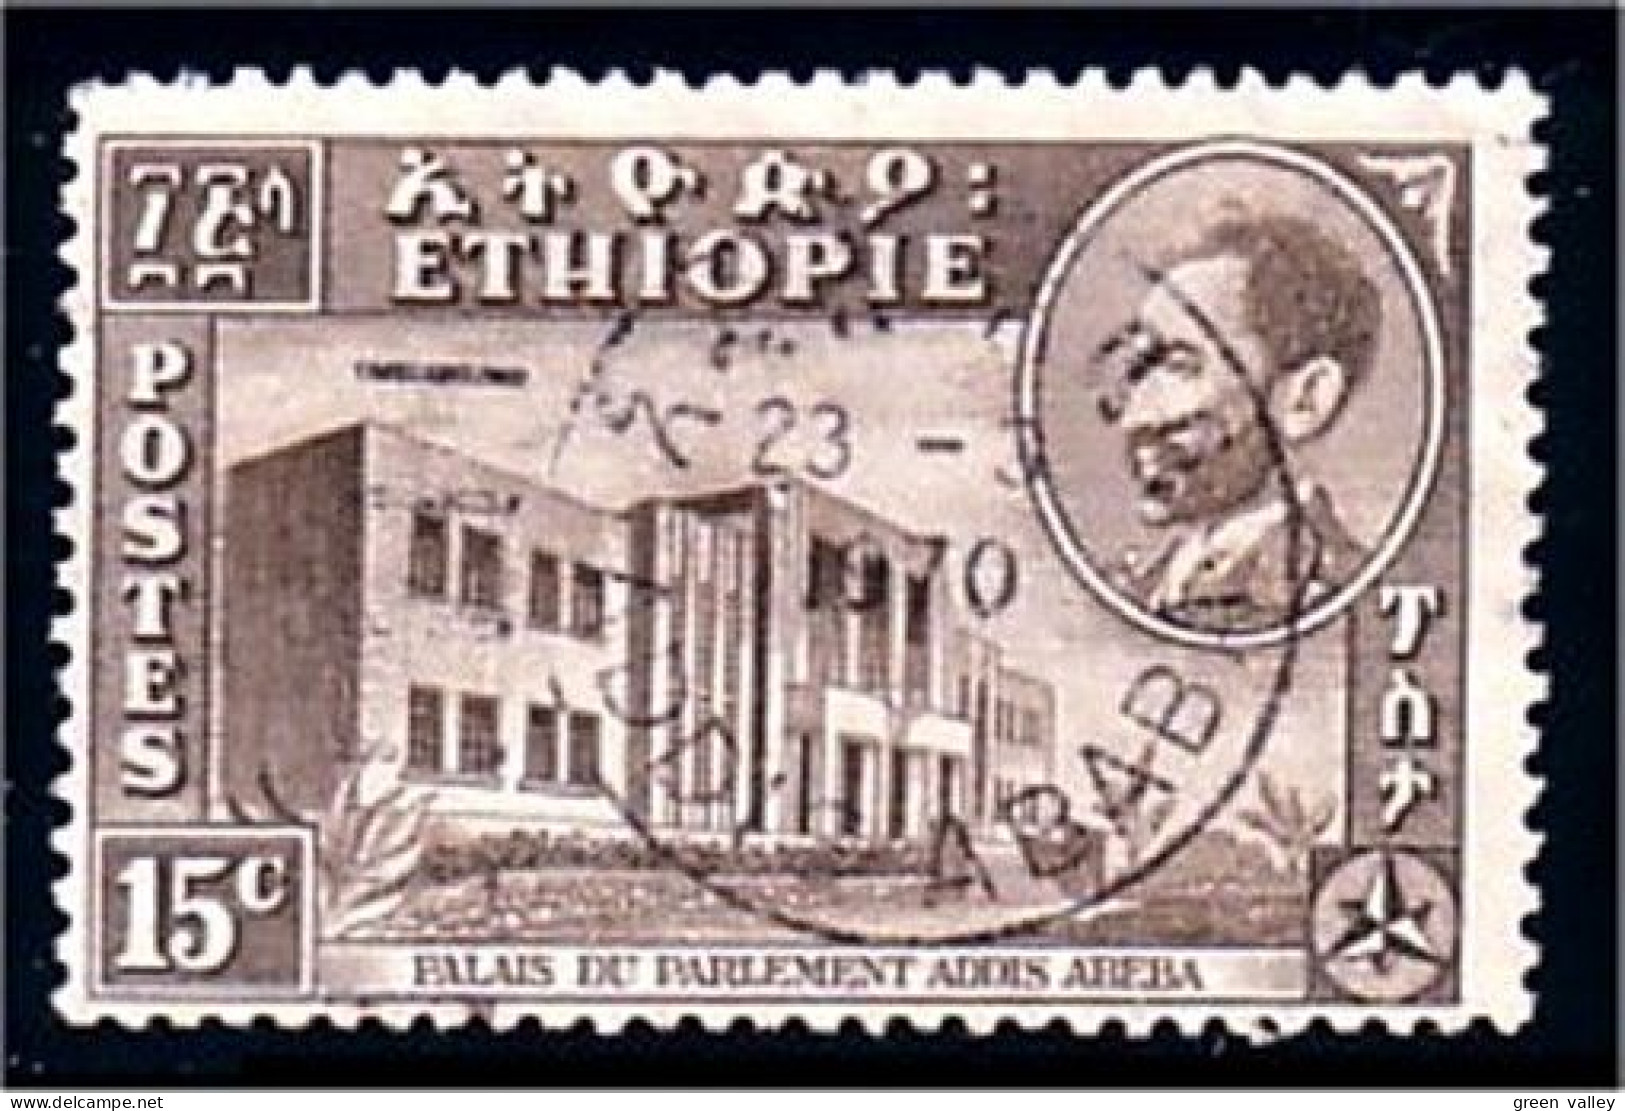 324 Ethiopie (ETH-107) - Ethiopie